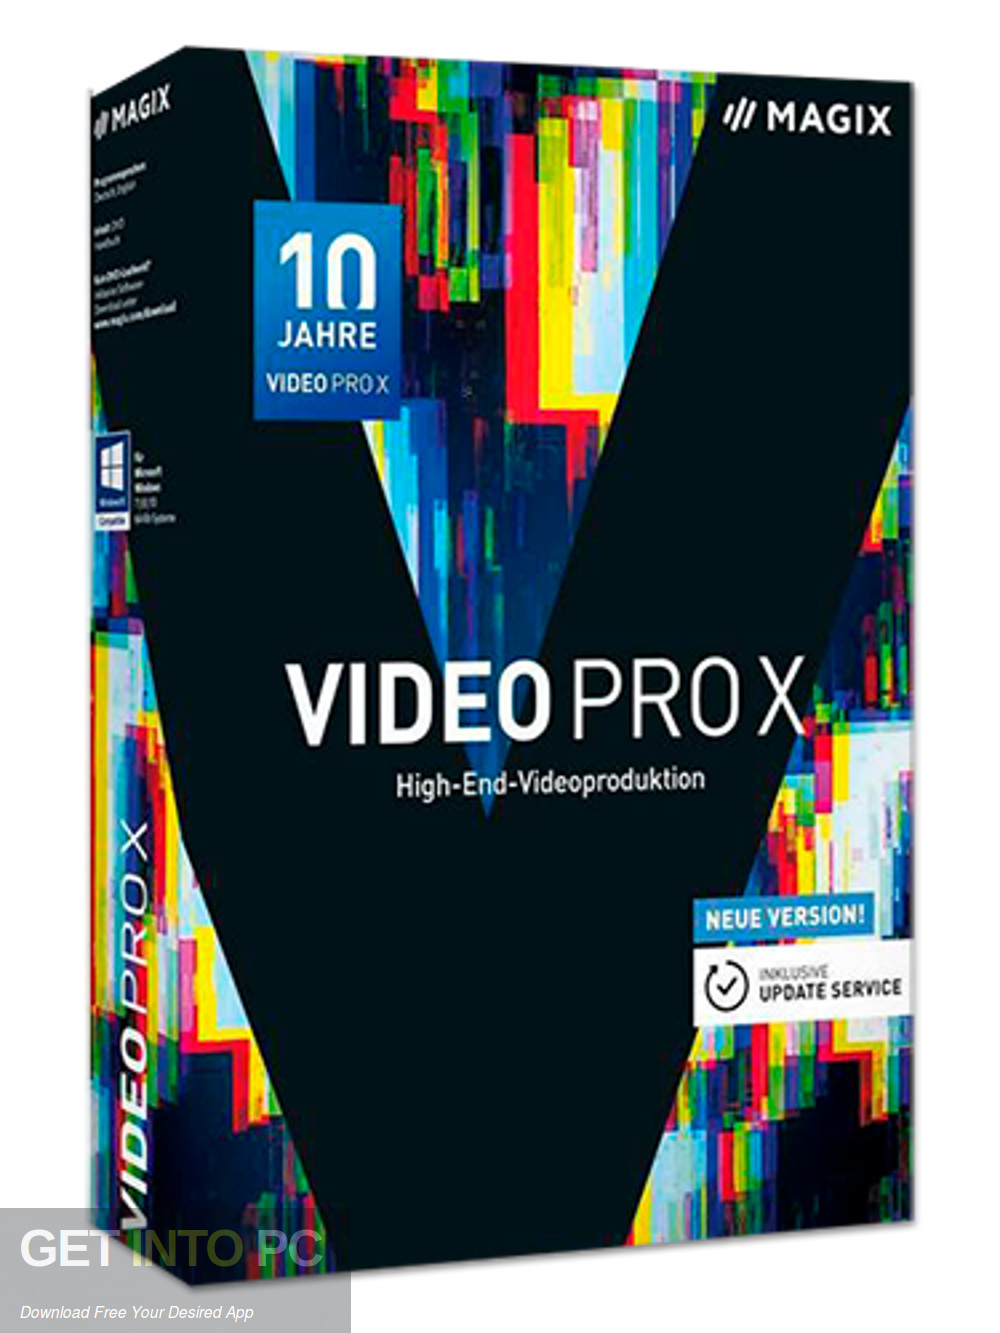 MAGIX Video Pro X10 Free Download-GetintoPC.com